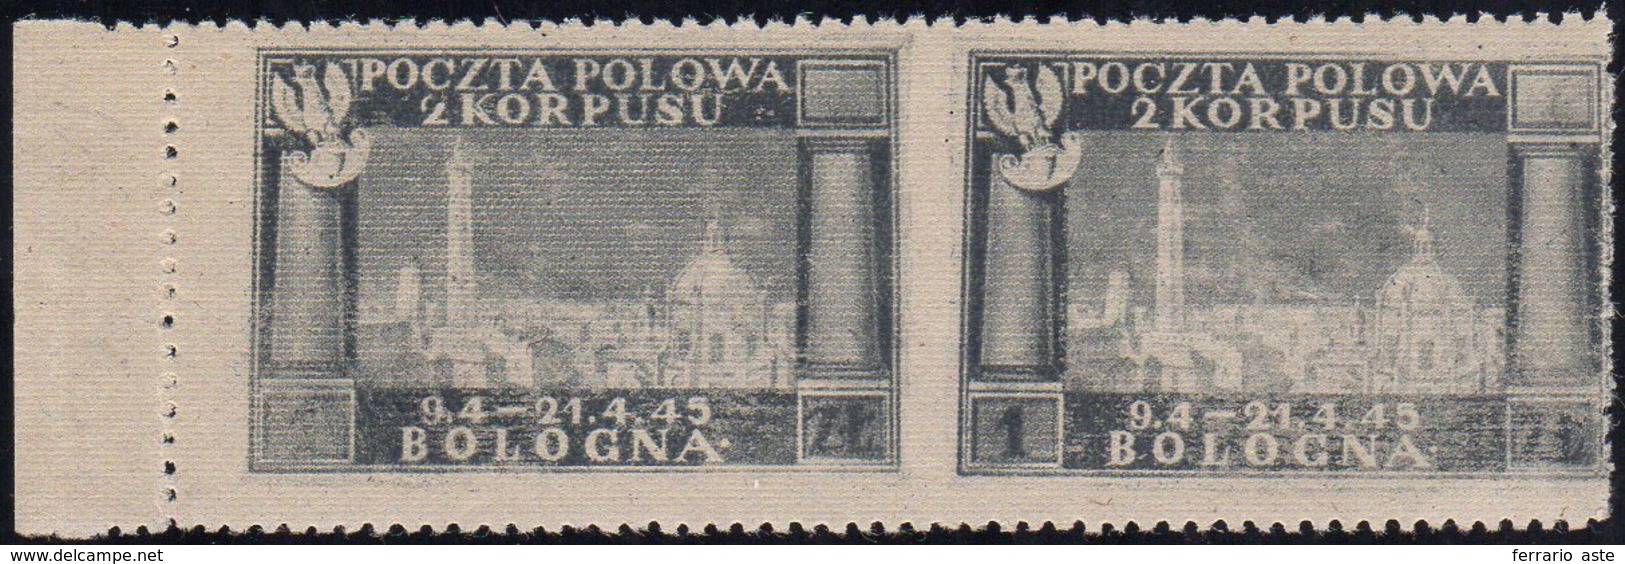 1946 - Vittorie Polacche, Carta Grigiastra, Coppia Orizzontale Non Dentellata Al Centro (3db), Gomma... - 1946-47 Corpo Polacco Periode